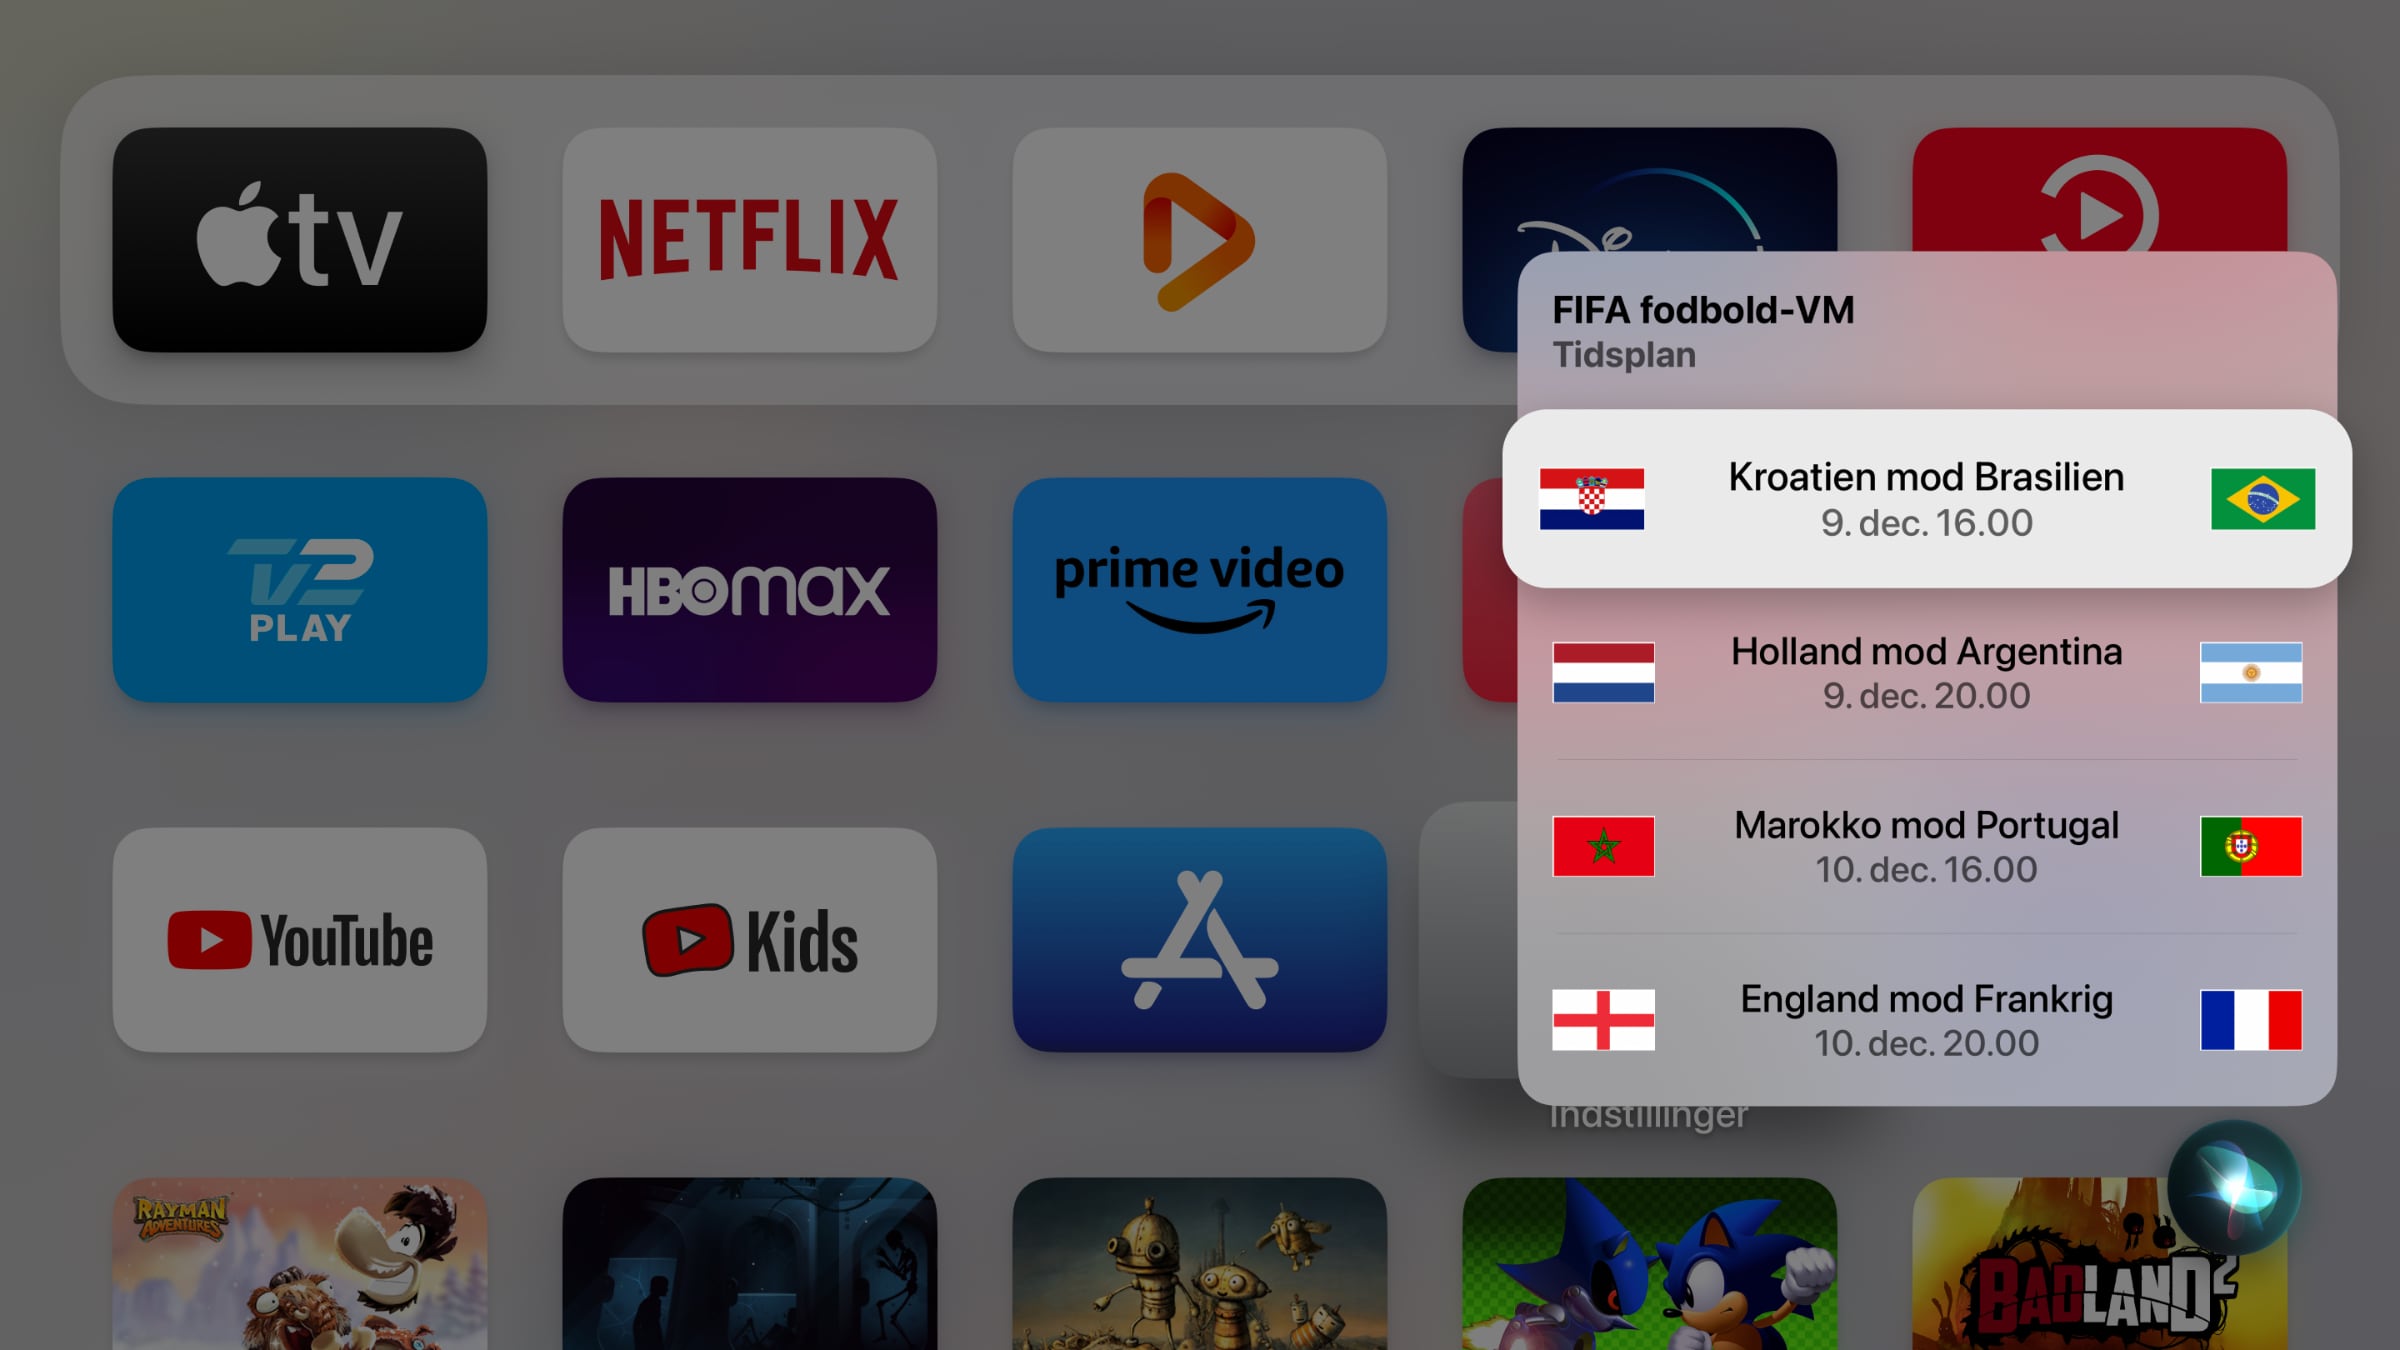 race mikrobølgeovn smeltet Dansk Siri klar på både Apple TV & HomePod i december - FlatpanelsDK